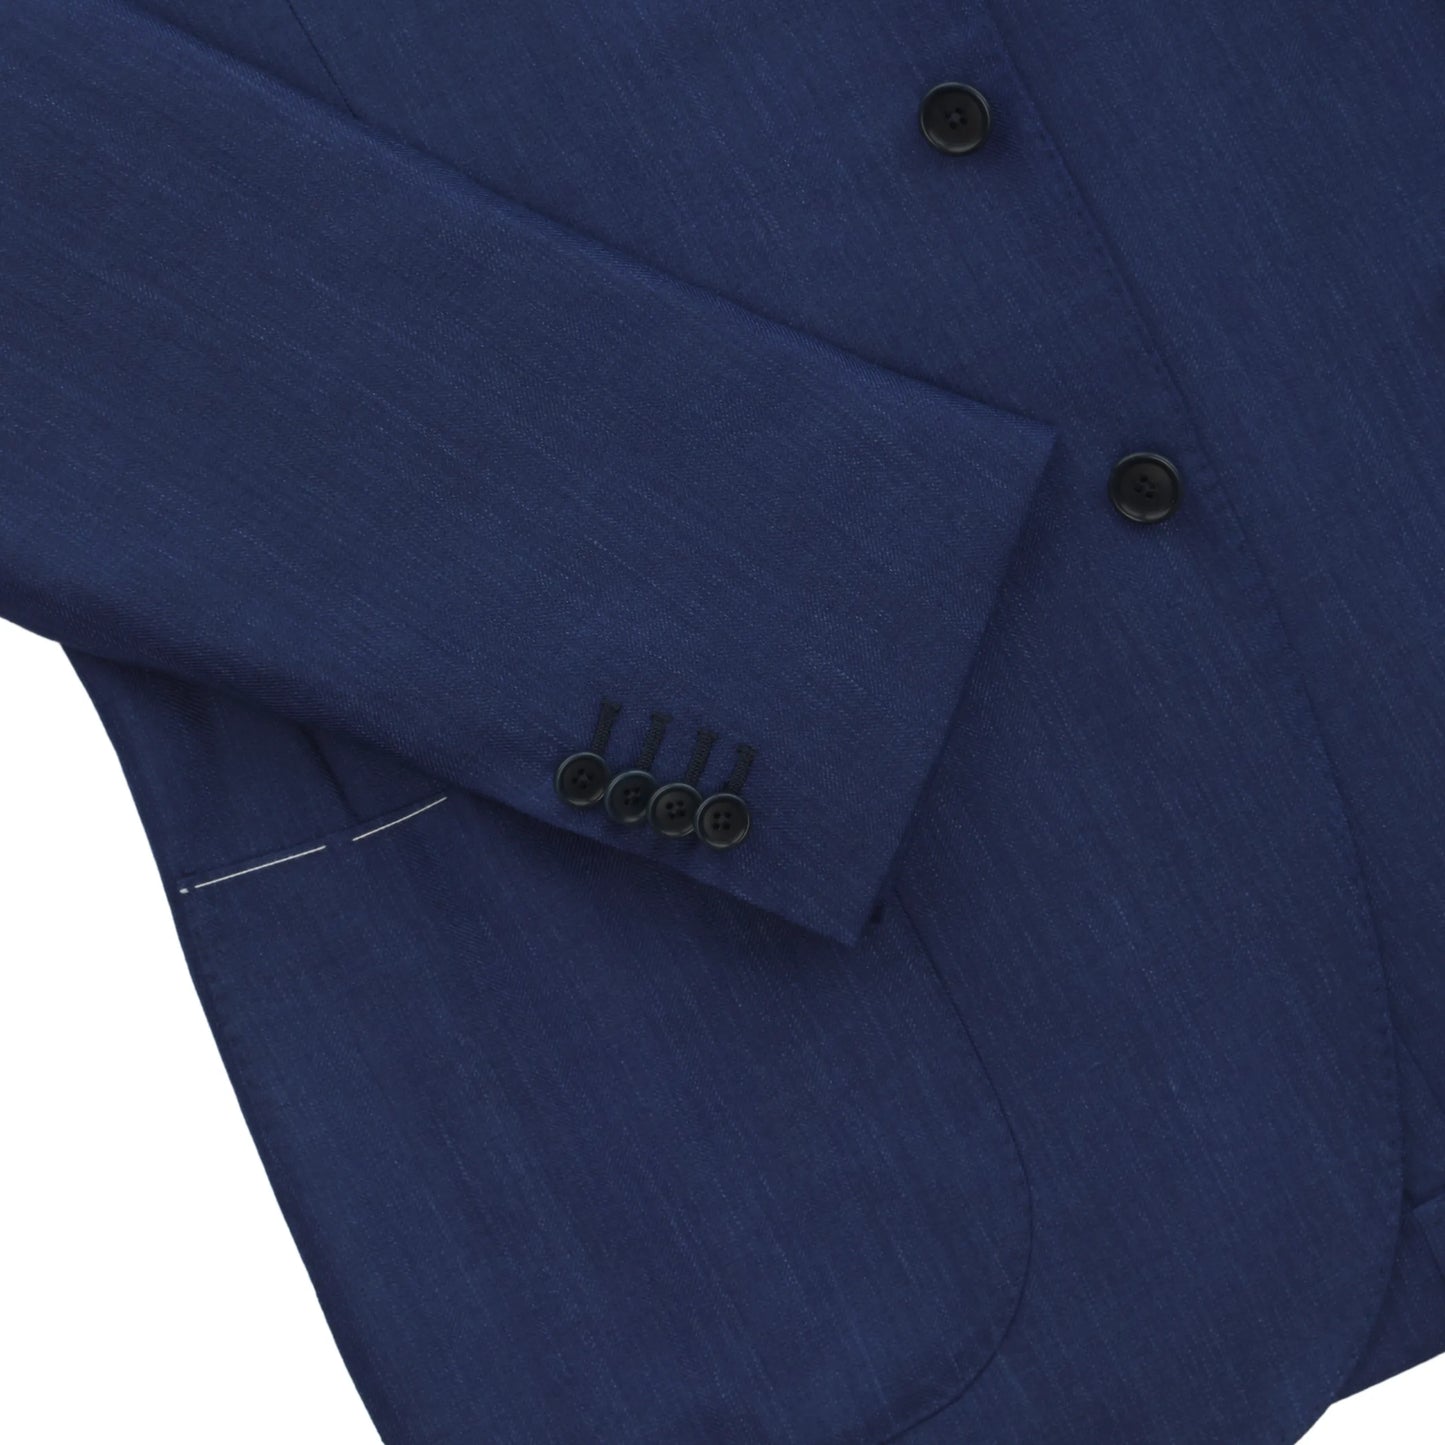 Einreihige Jacke aus Wolle-Seide-Gemisch in Königsblau